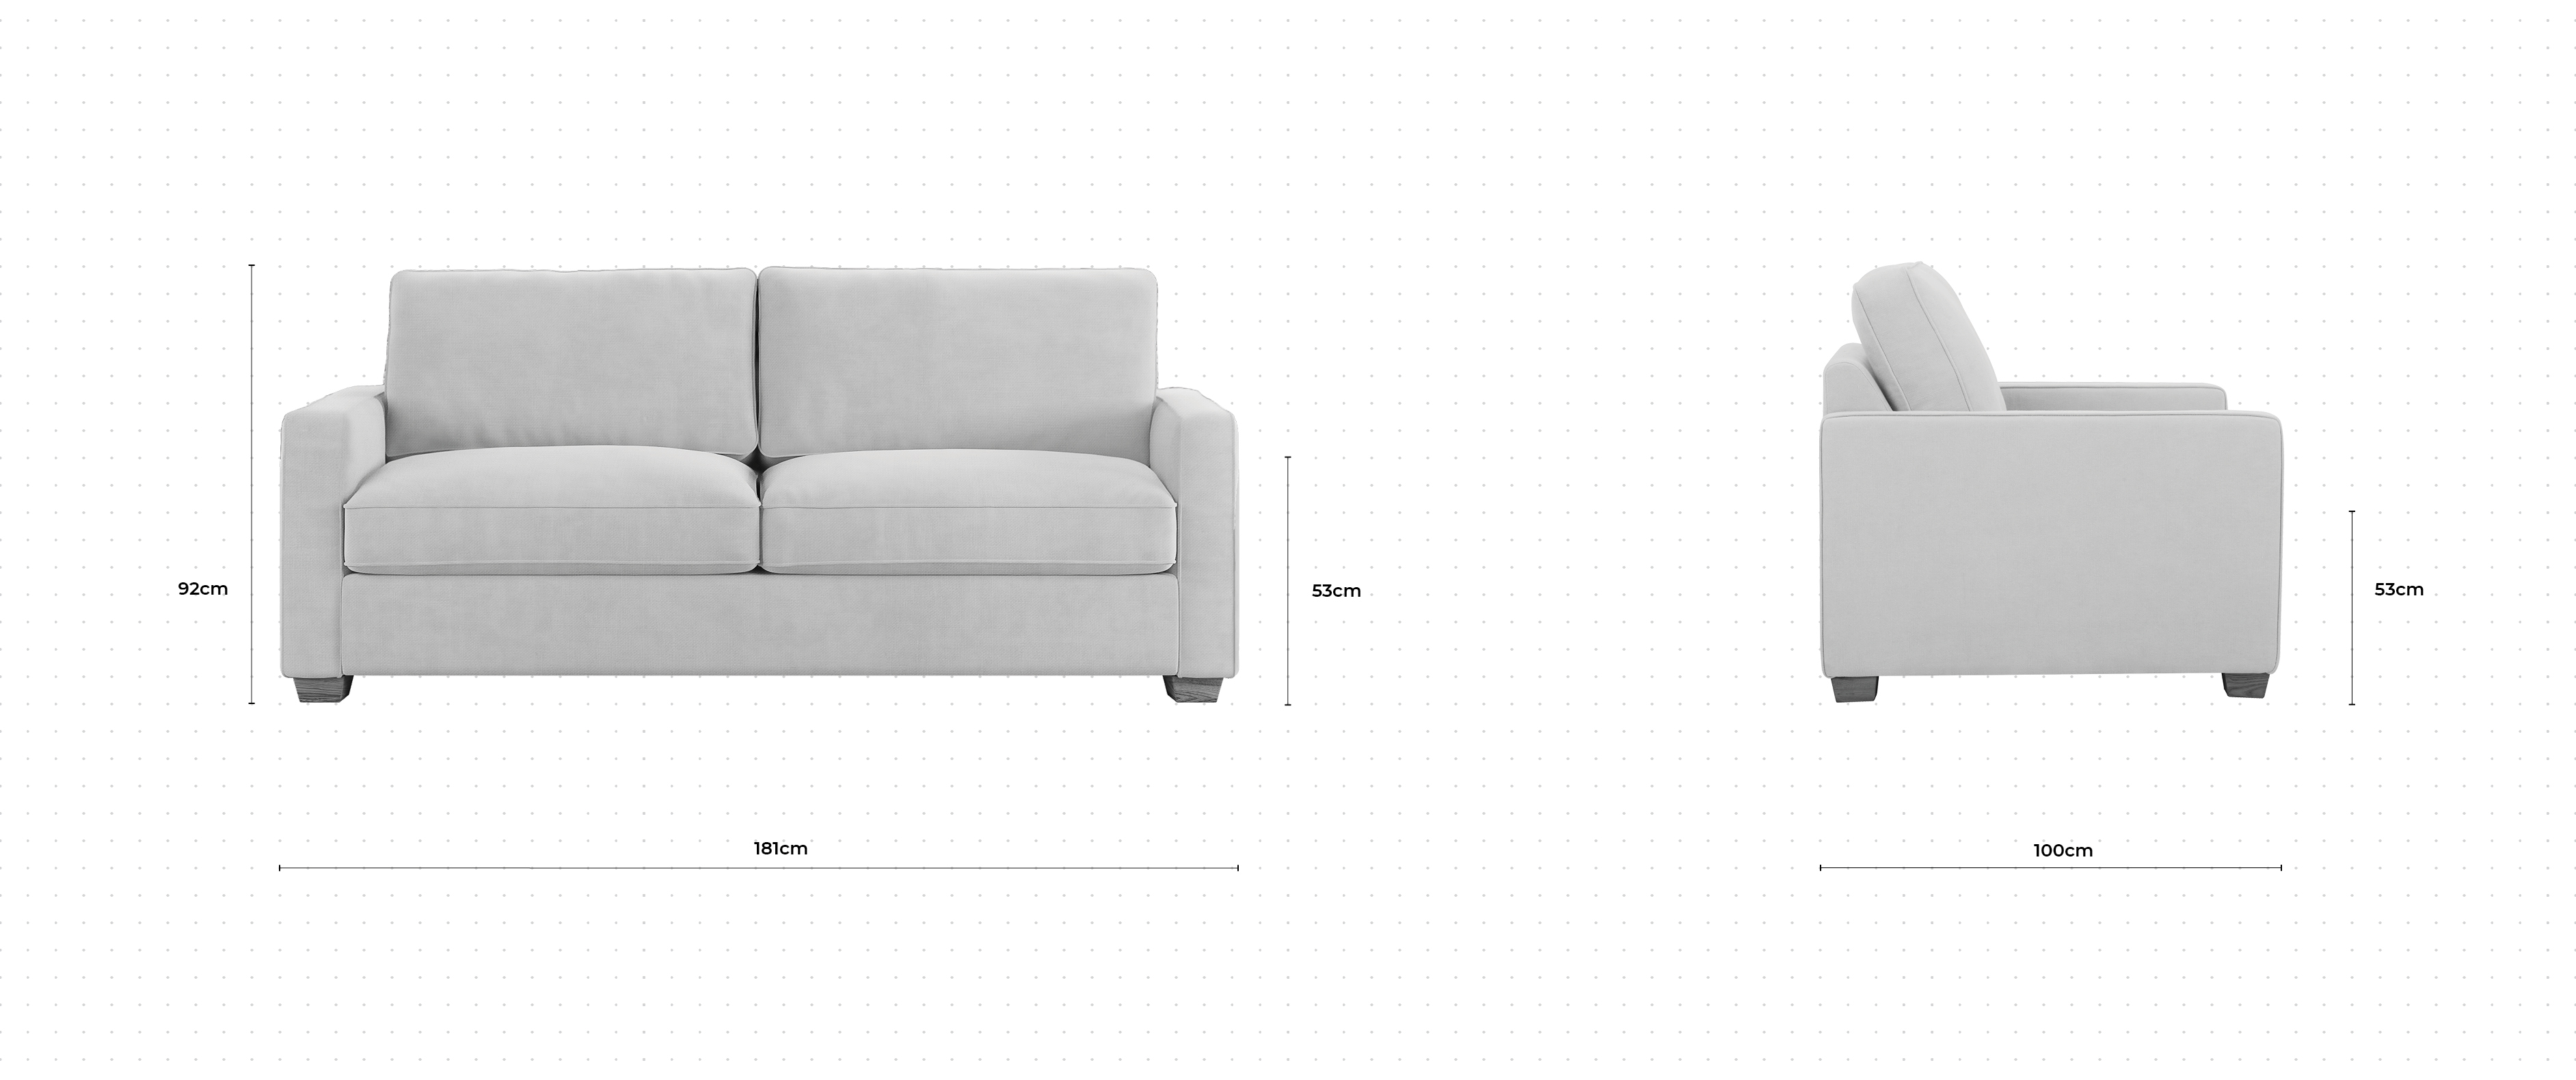 Blake 2 Seater Sofa dimensions